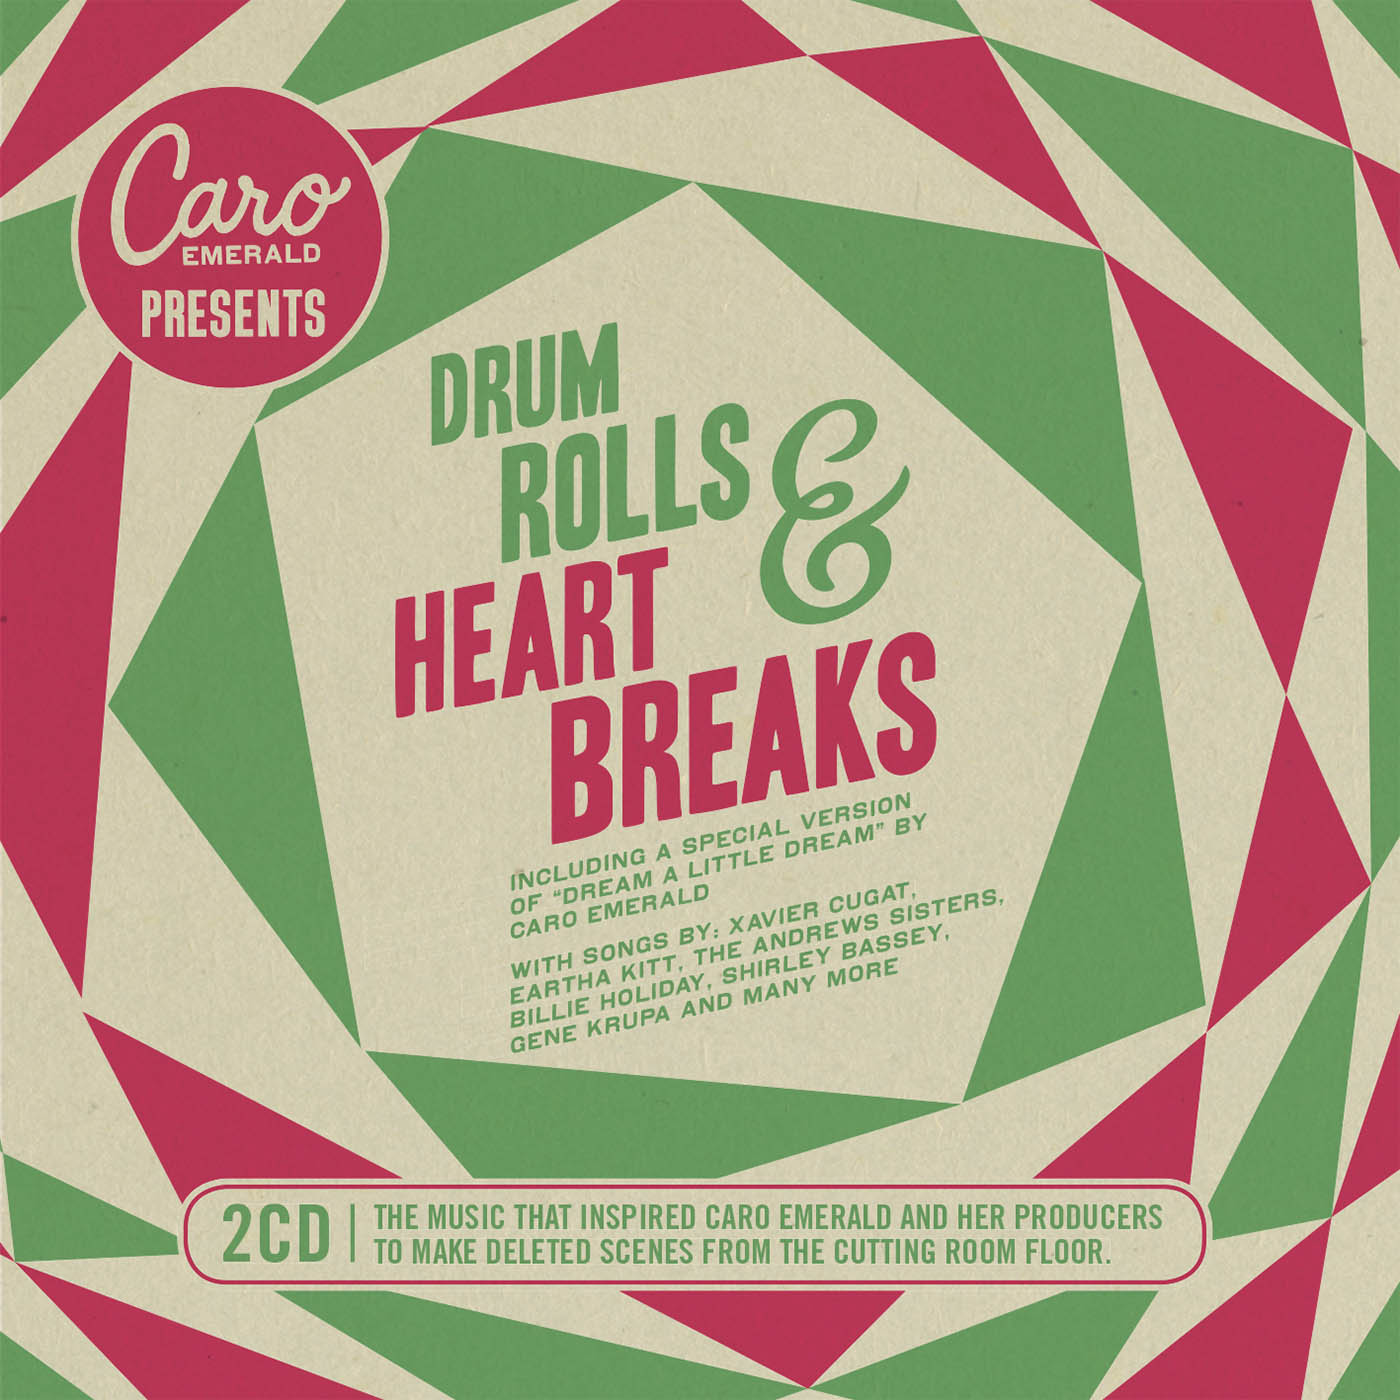 Caro Emerald Presents Drum Rolls & Heart Breaks